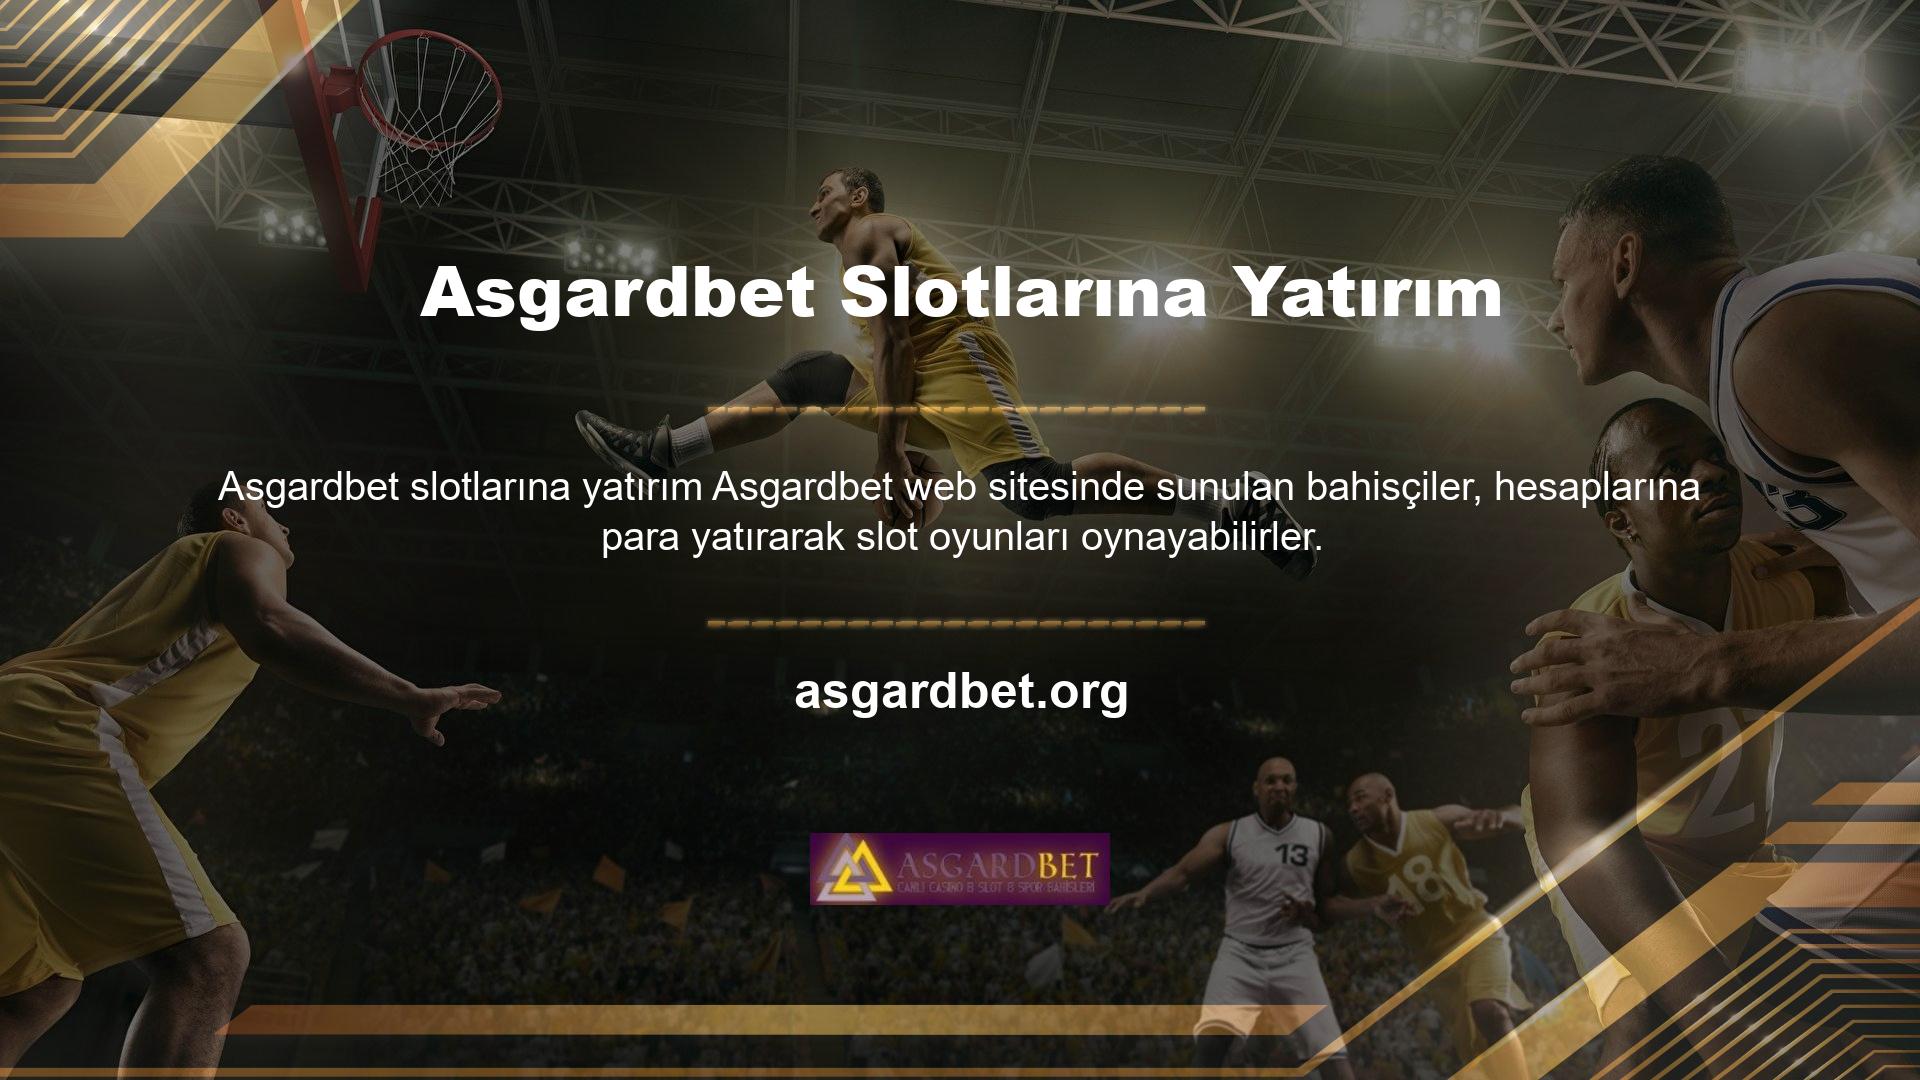 Asgardbet web sitesi içeriği, işlemi her açıdan kolay ve güvenli hale getirmek için çeşitli sistemler içerir